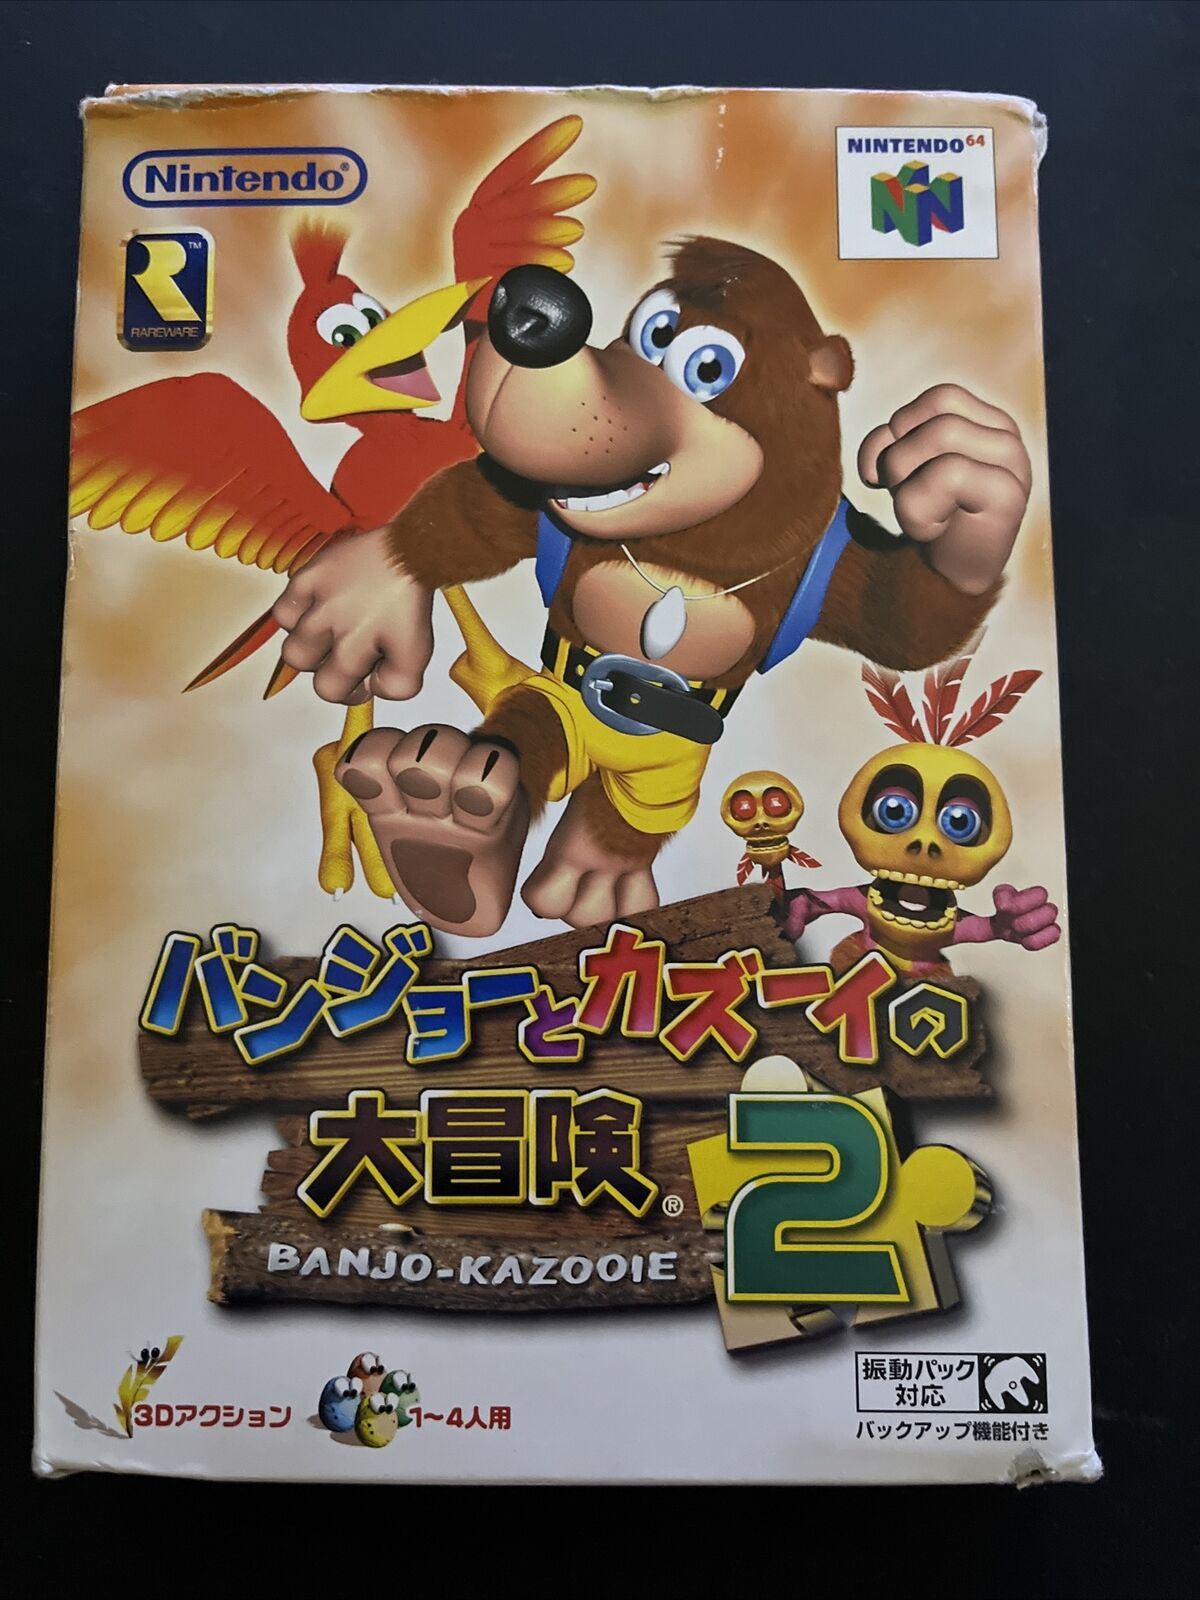 Nintendo 64 - N64 Banjo Kazooie Box (wear), Manual (Nice), Game (Nice)